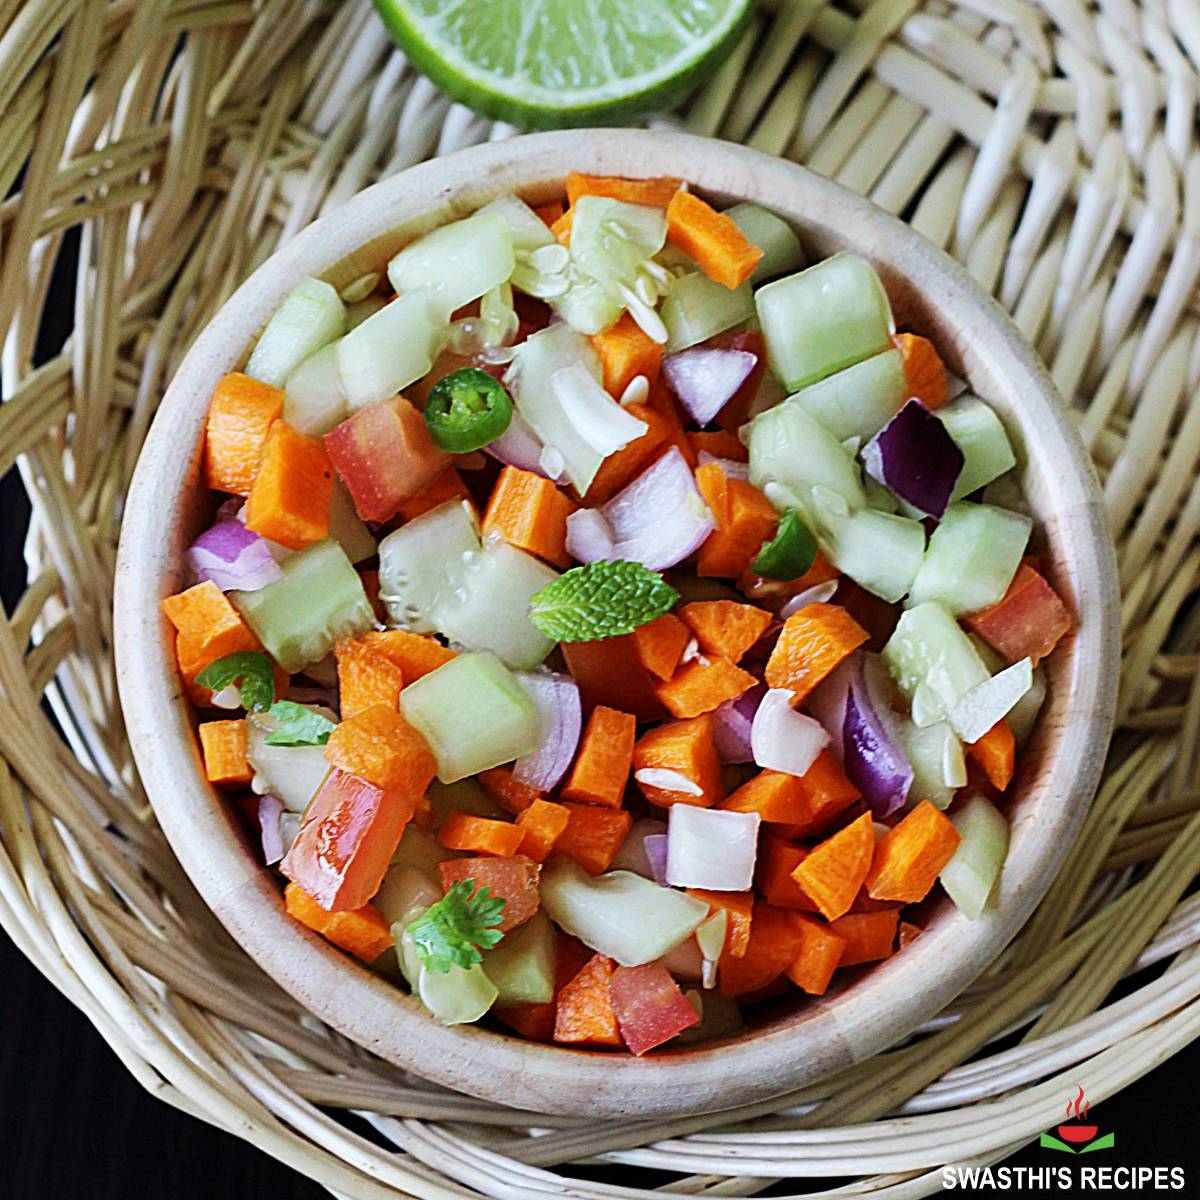 https://www.indianhealthyrecipes.com/wp-content/uploads/2022/04/vegetable-salad-recipe.jpg